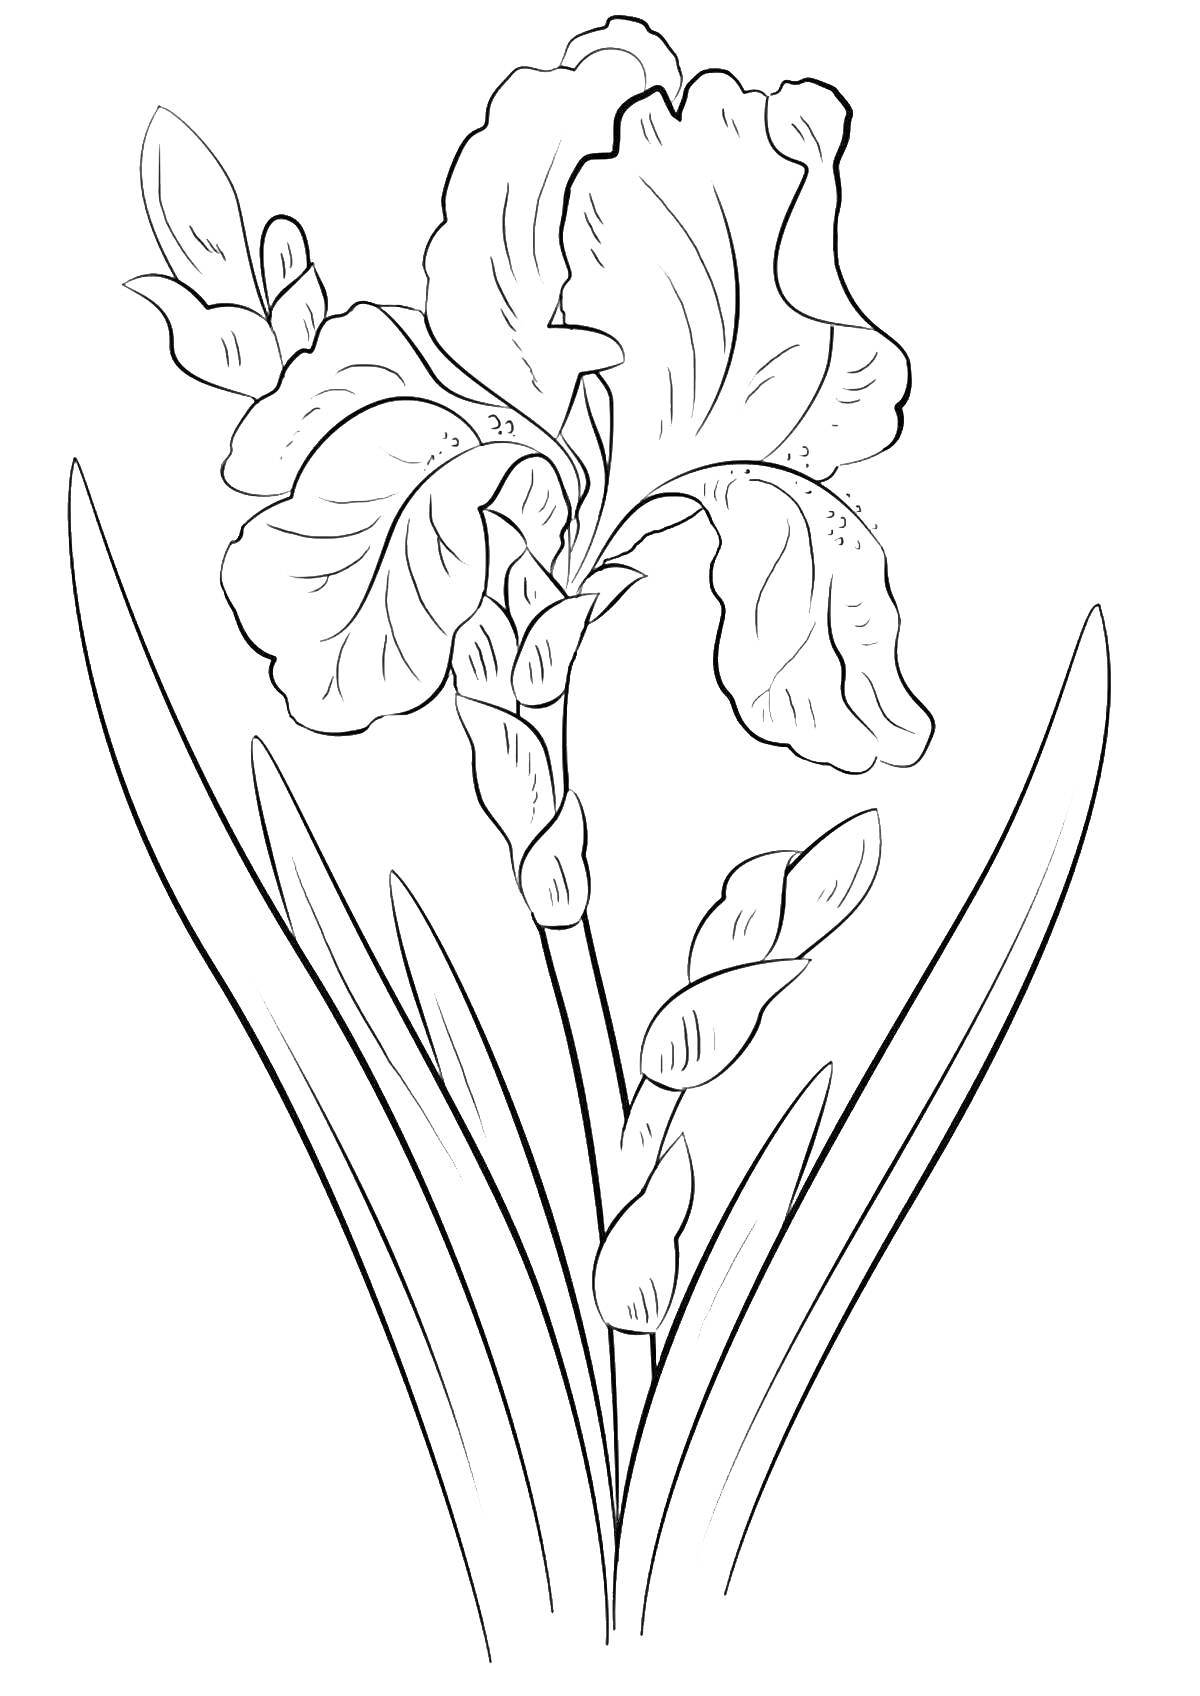 Раскраска с изображением цветка ириса с листьями и бутонами